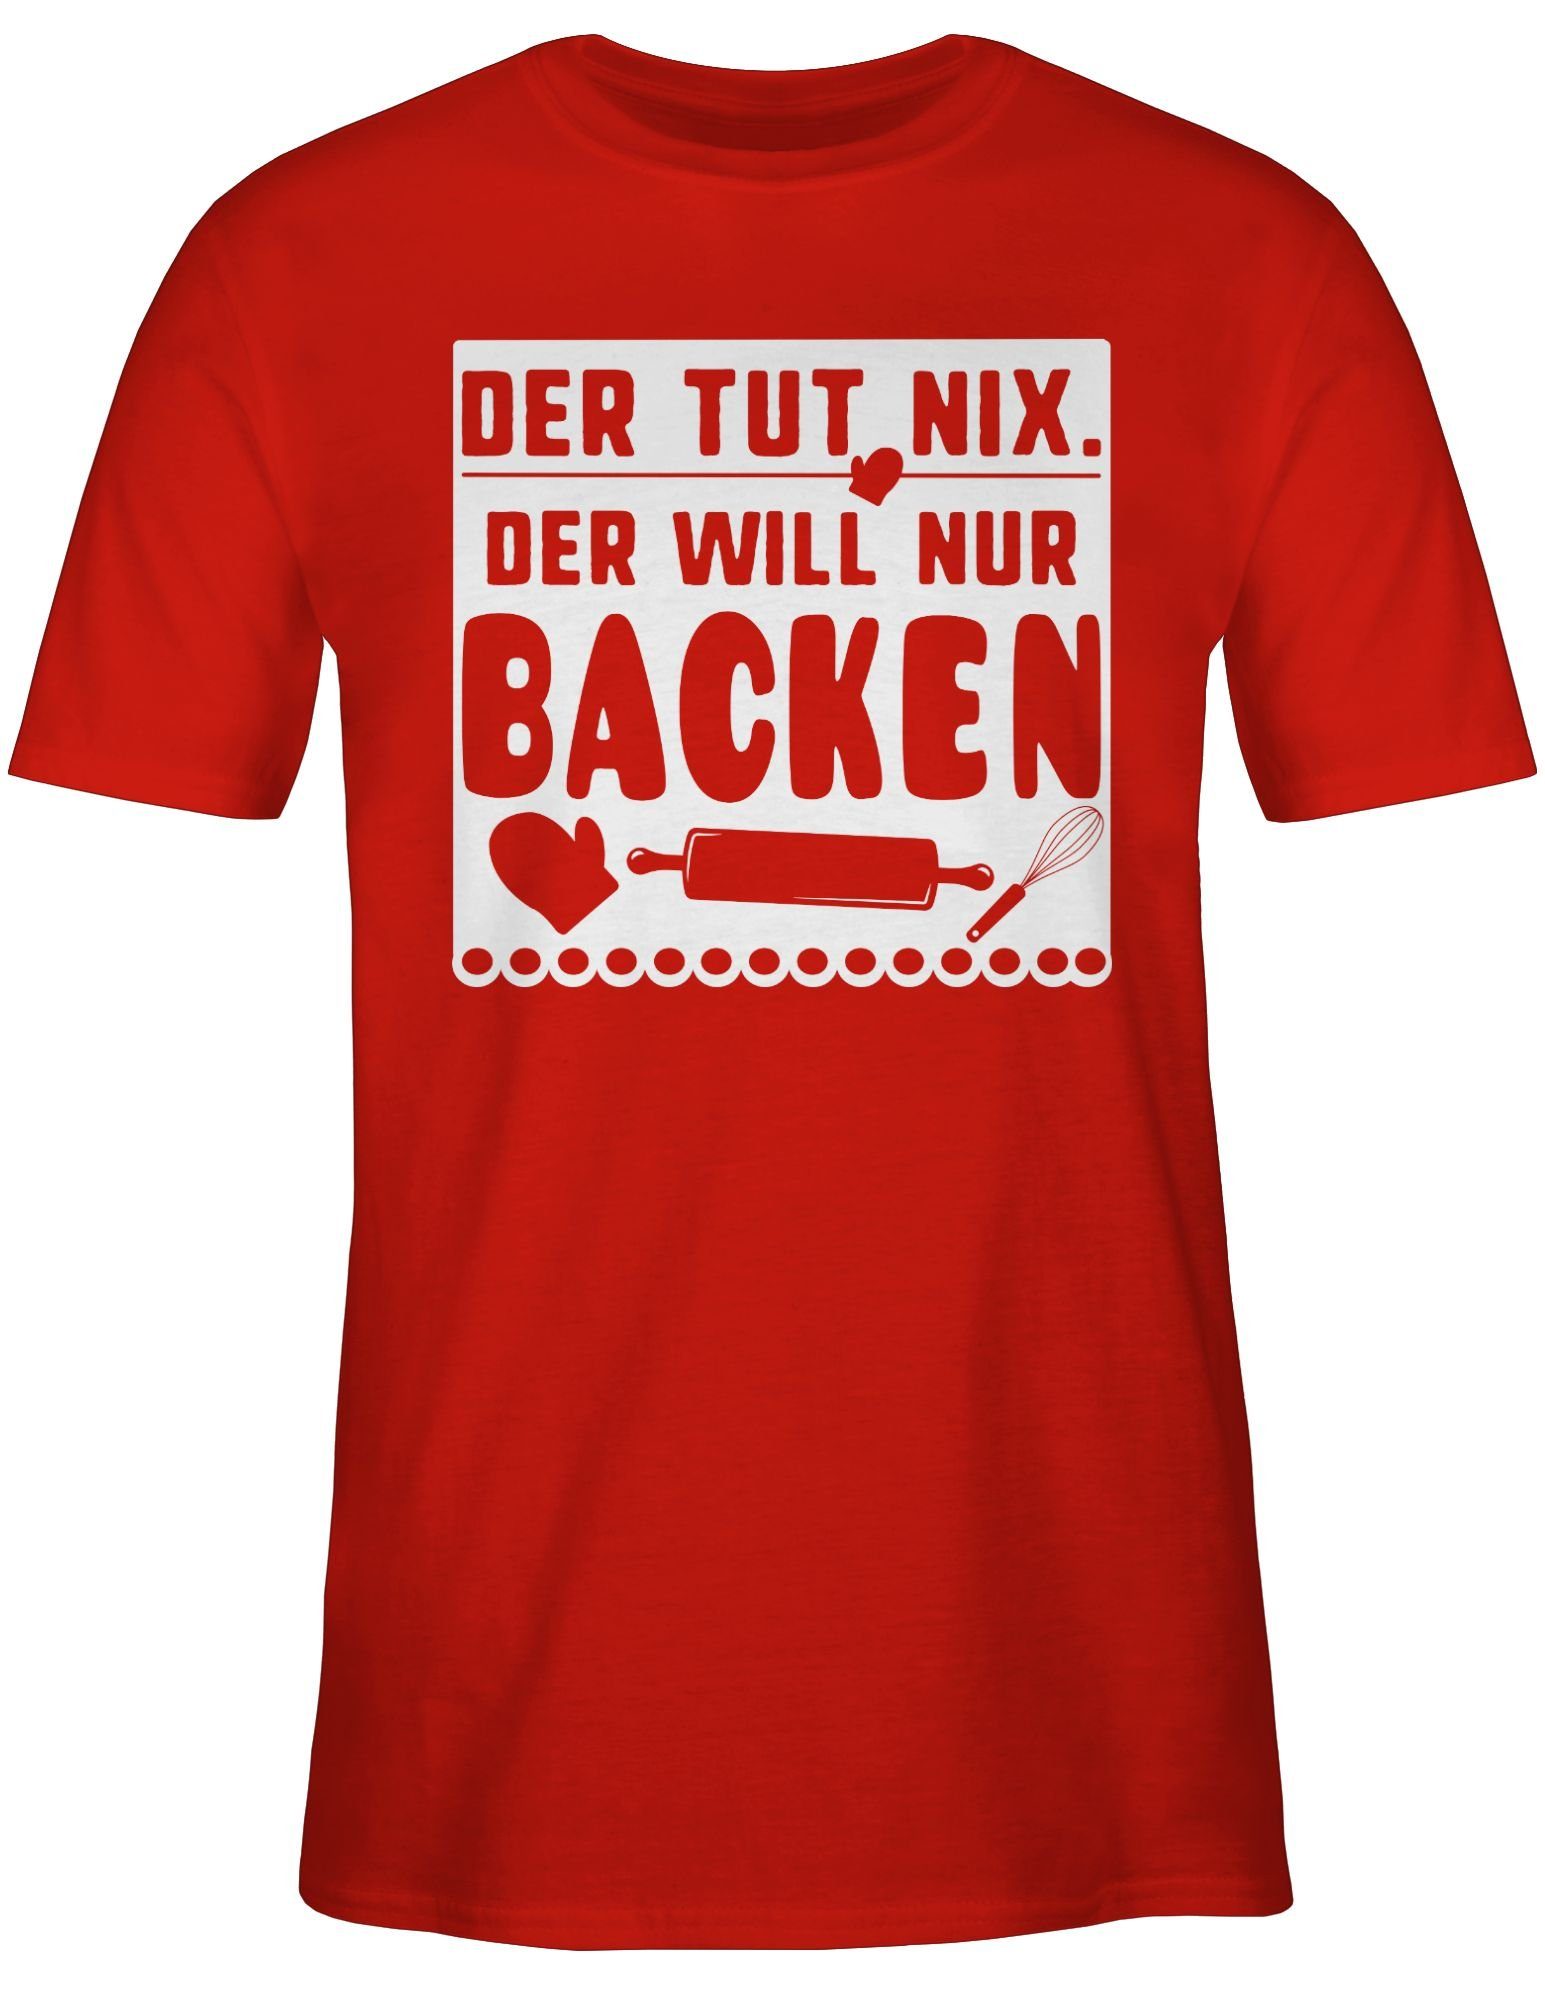 Shirtracer T-Shirt Der tut nur backen nix will der 3 Rot Küche